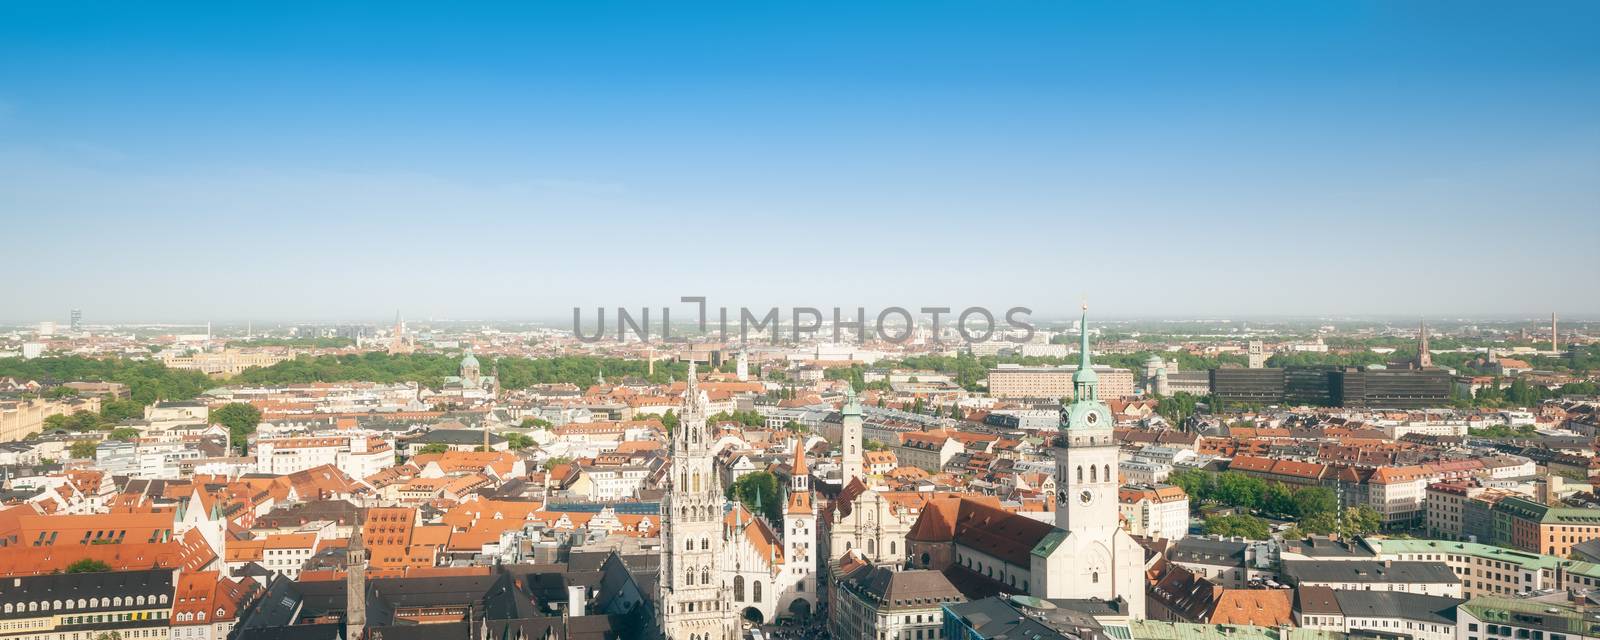 panorama Munich by magann